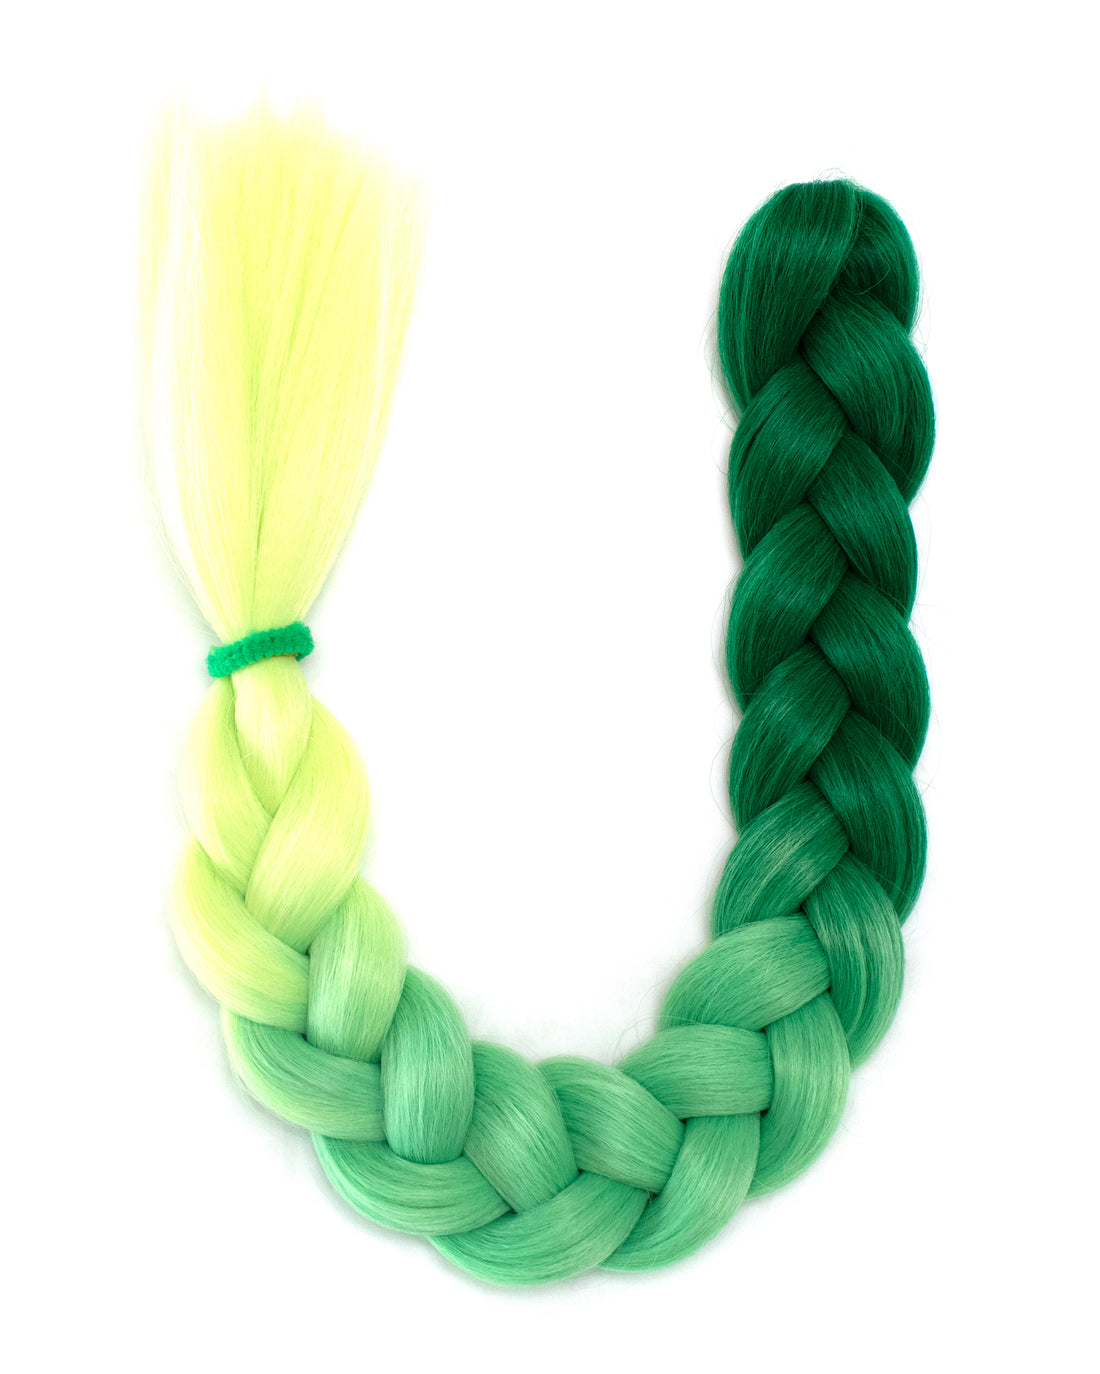 Top Shelf - Green Ombre Braid-In HAir - Lunautics Braid-In Hair